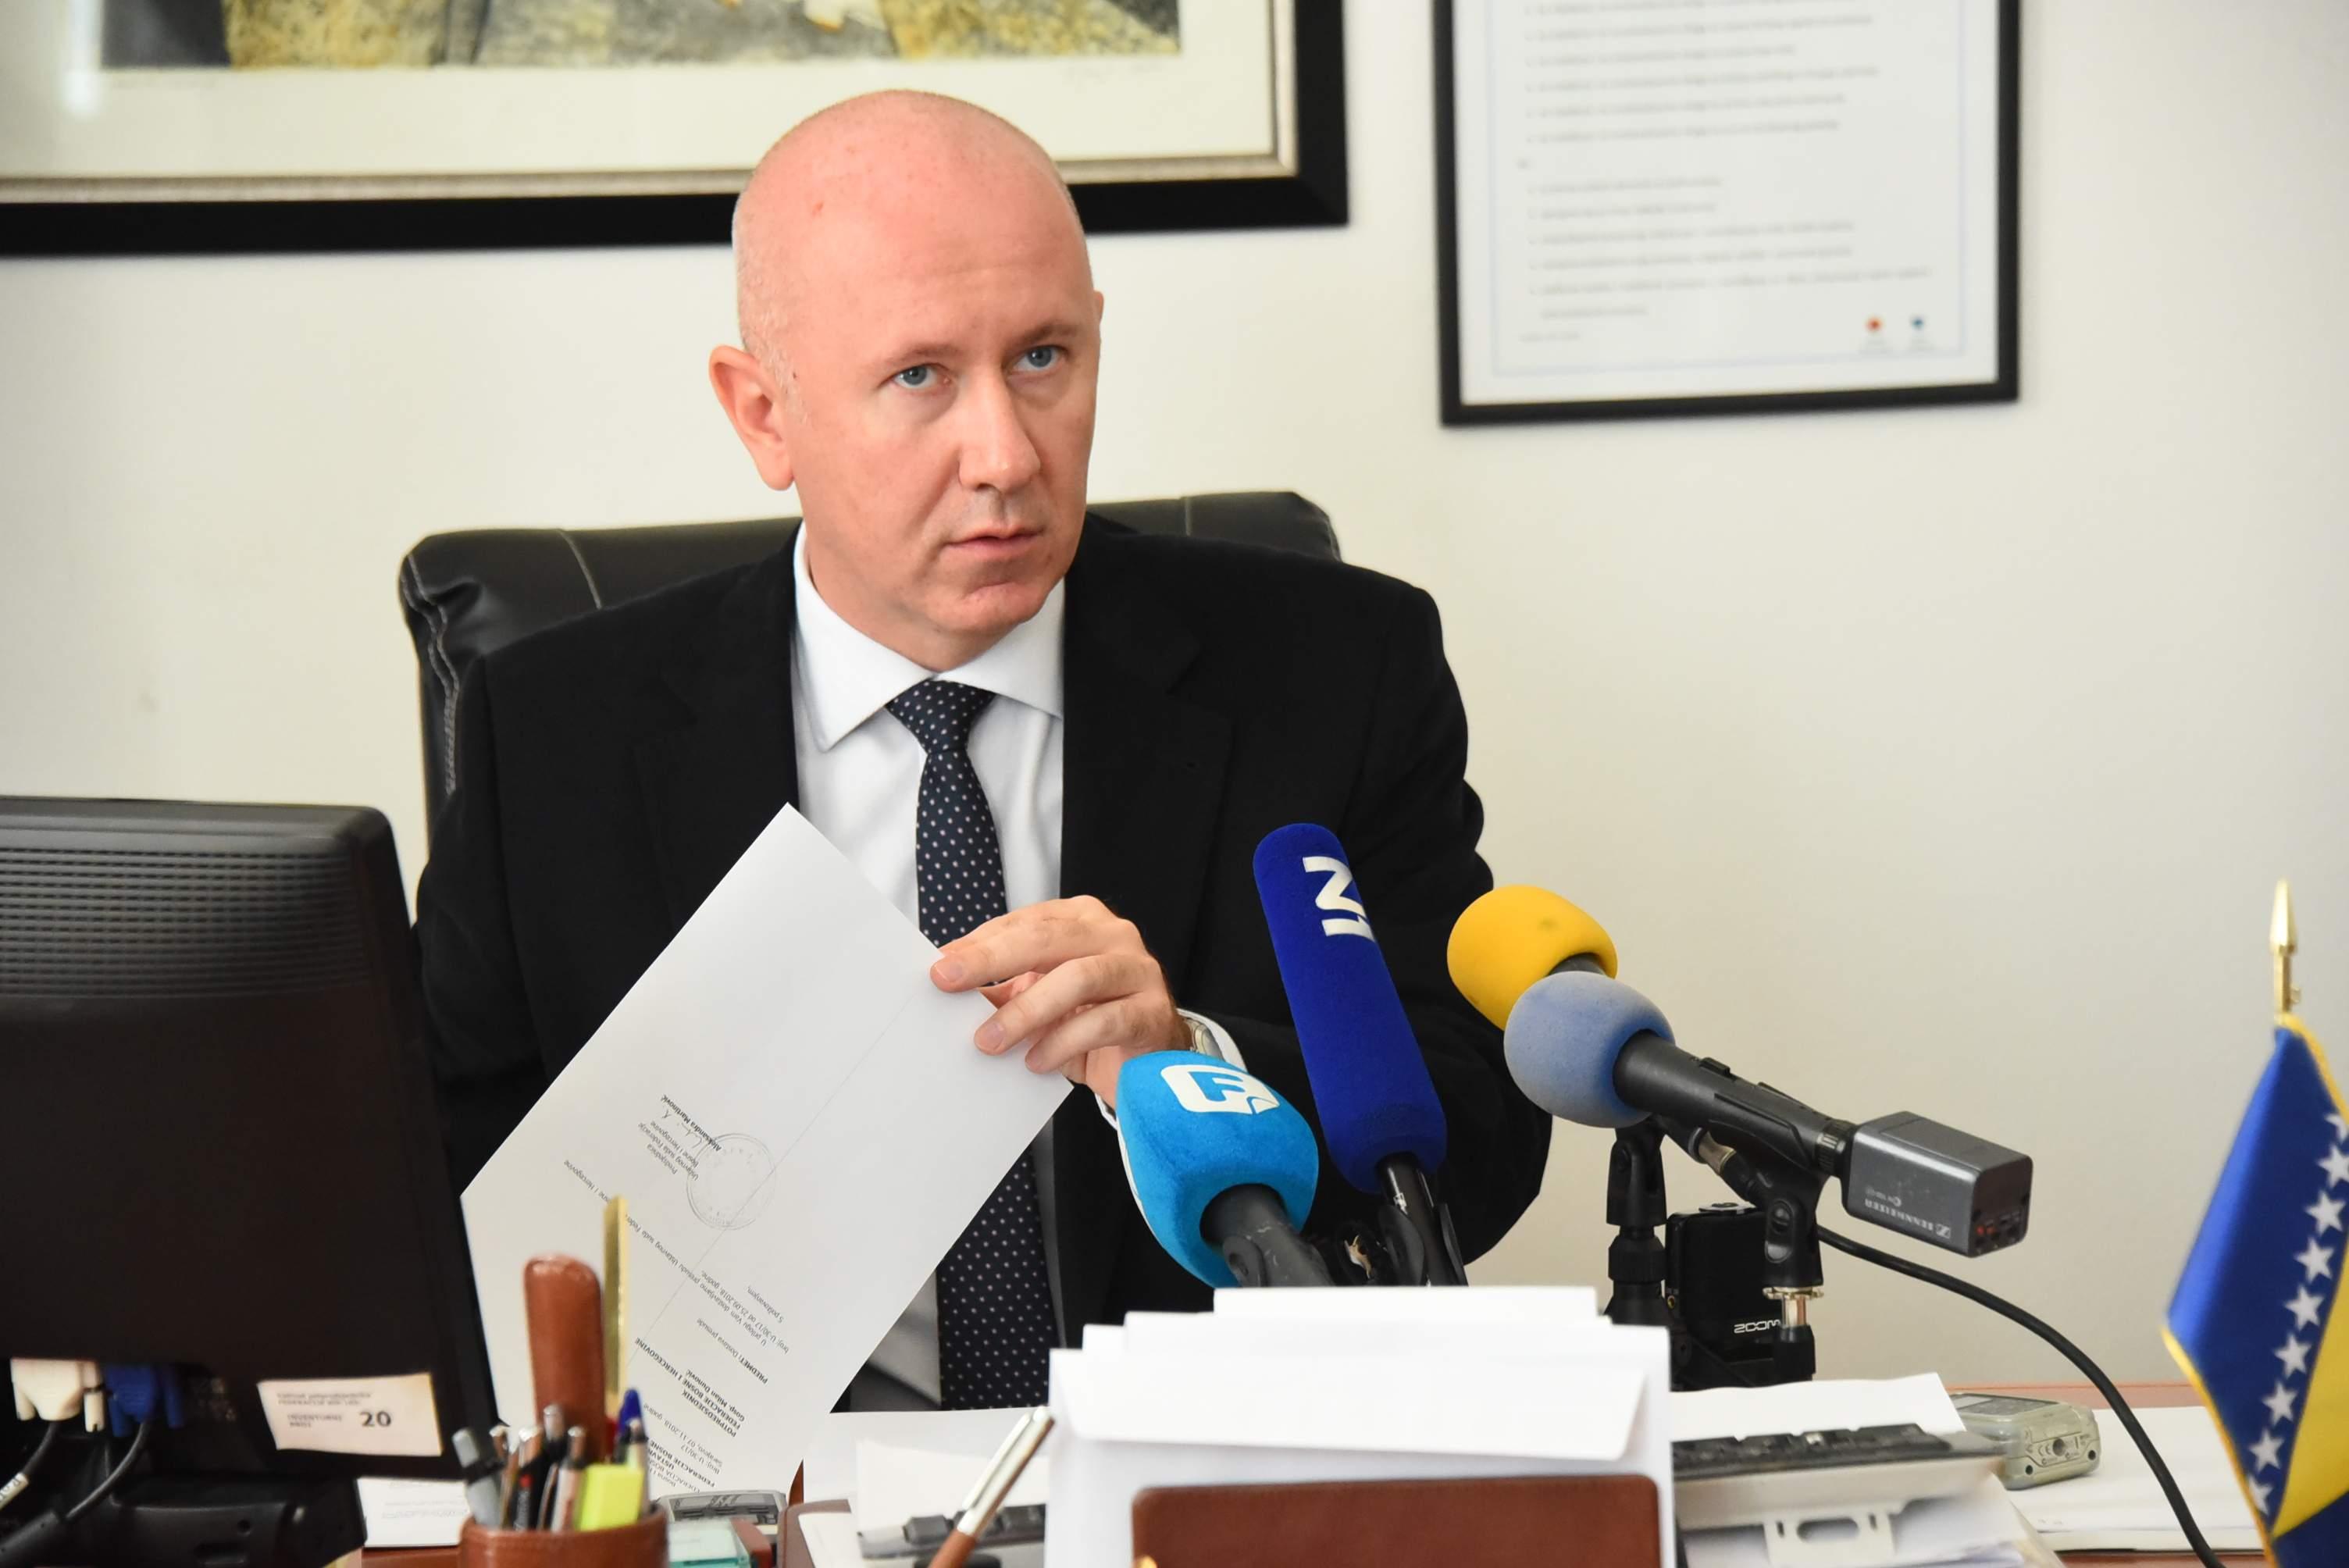 Dunović: Vlada FBiH, kao kolektivni organ, mora uključiti sva resorna ministarstva u izradu zakona - Avaz